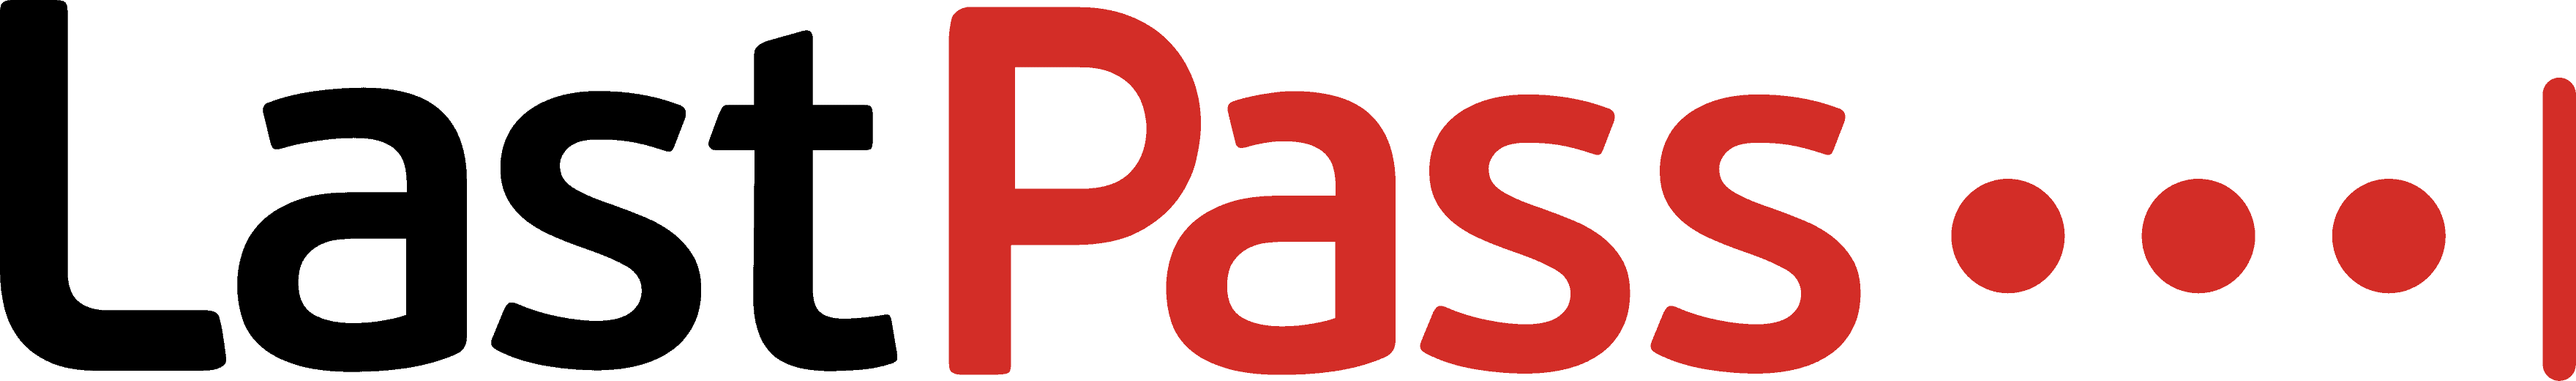 LastPass-Logo-Color.png